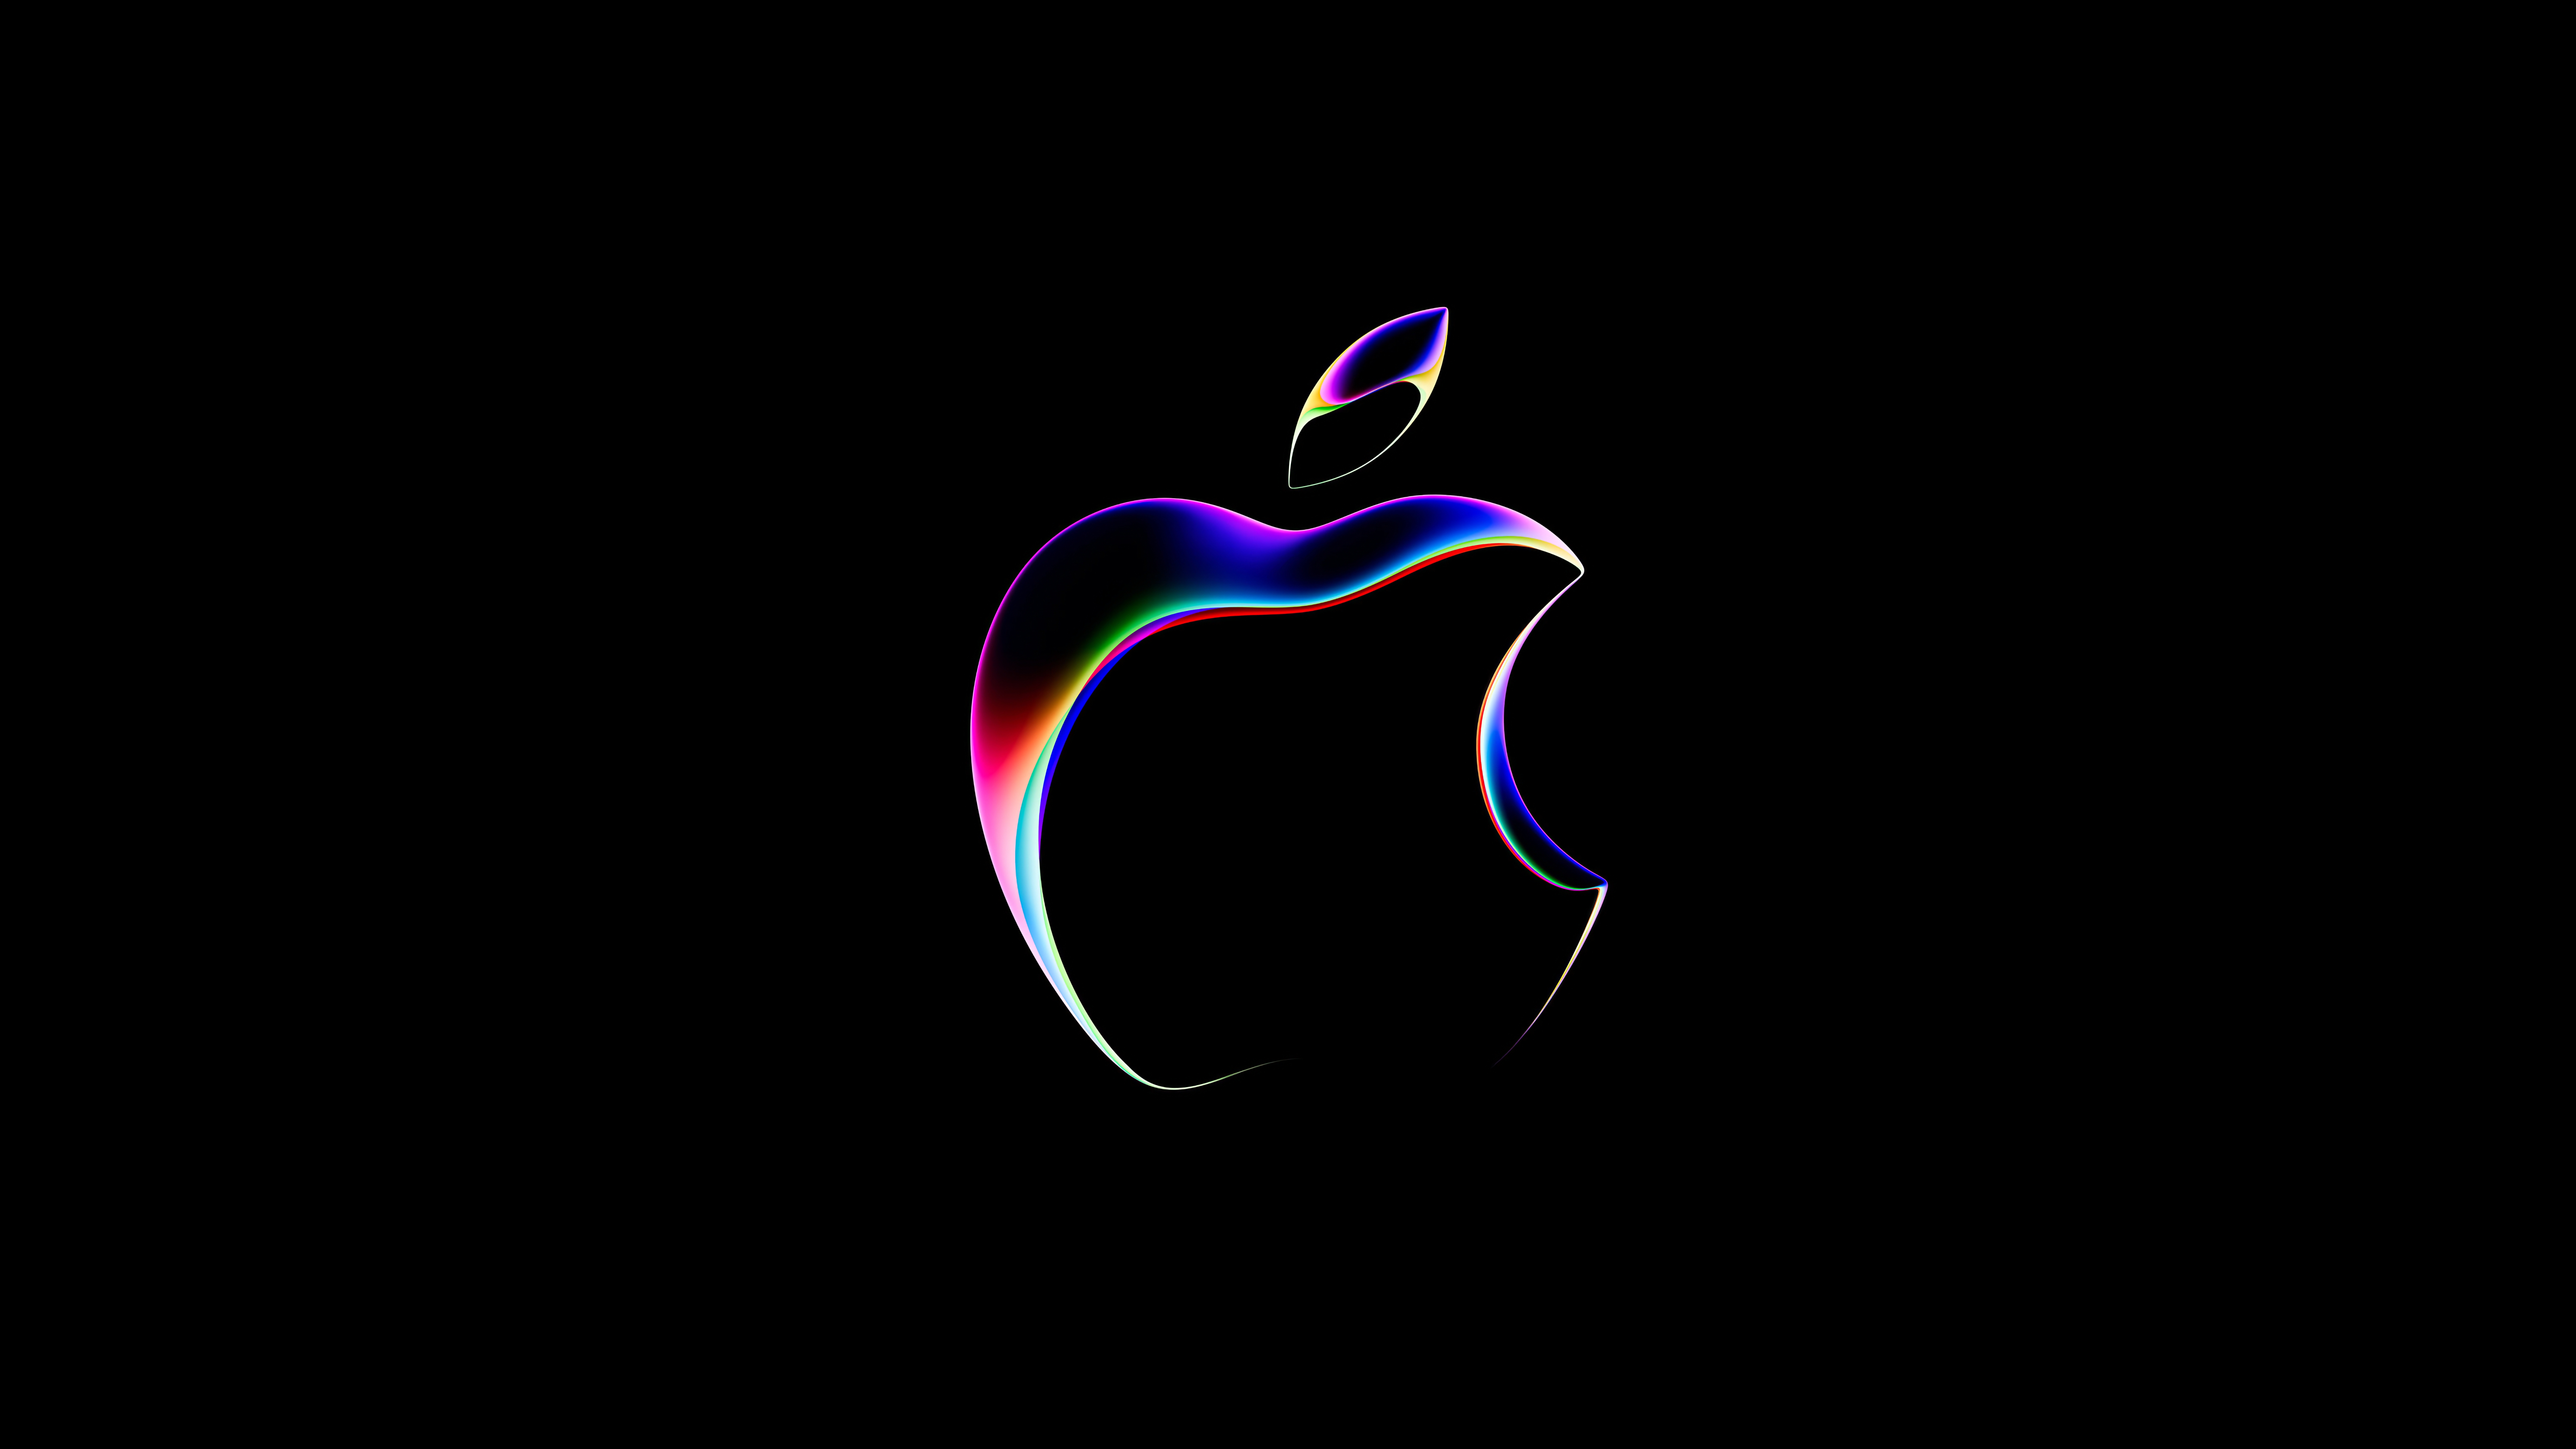 HD wallpaper, Black Background, Apple Logo, Wwdc 2023, 8K, 5K